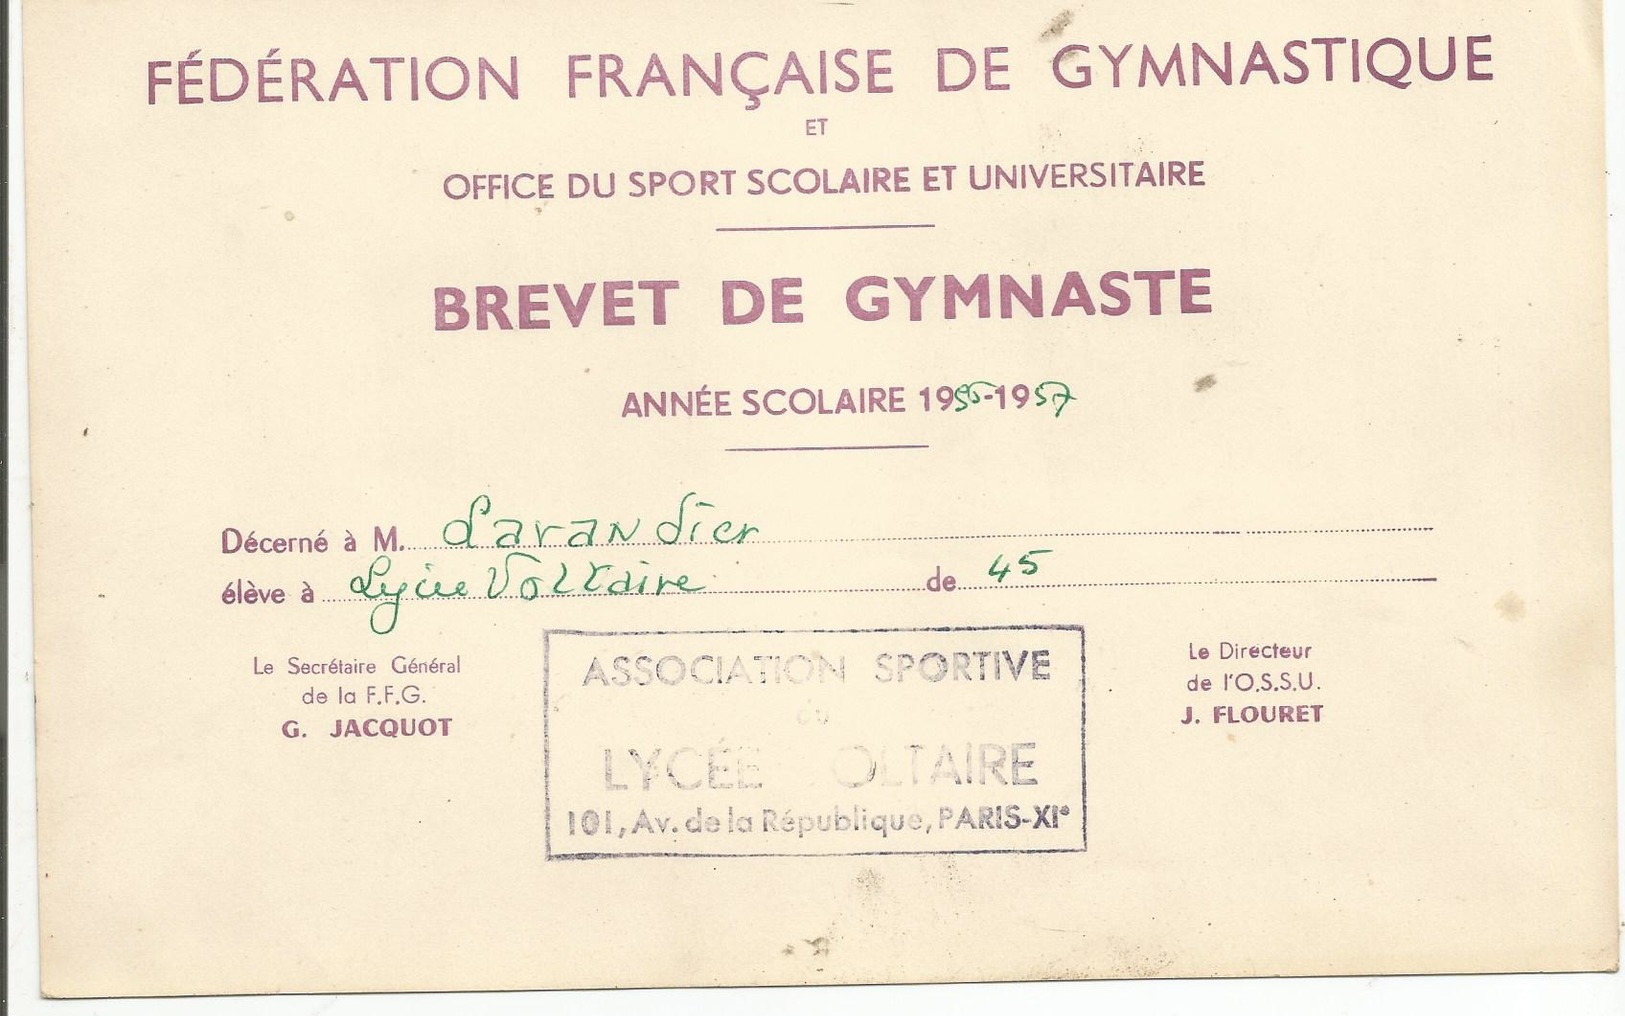 Brevet Federation Francaise De Gymnastique Lycée Voltaire Paris  1956.1957 - Diplômes & Bulletins Scolaires